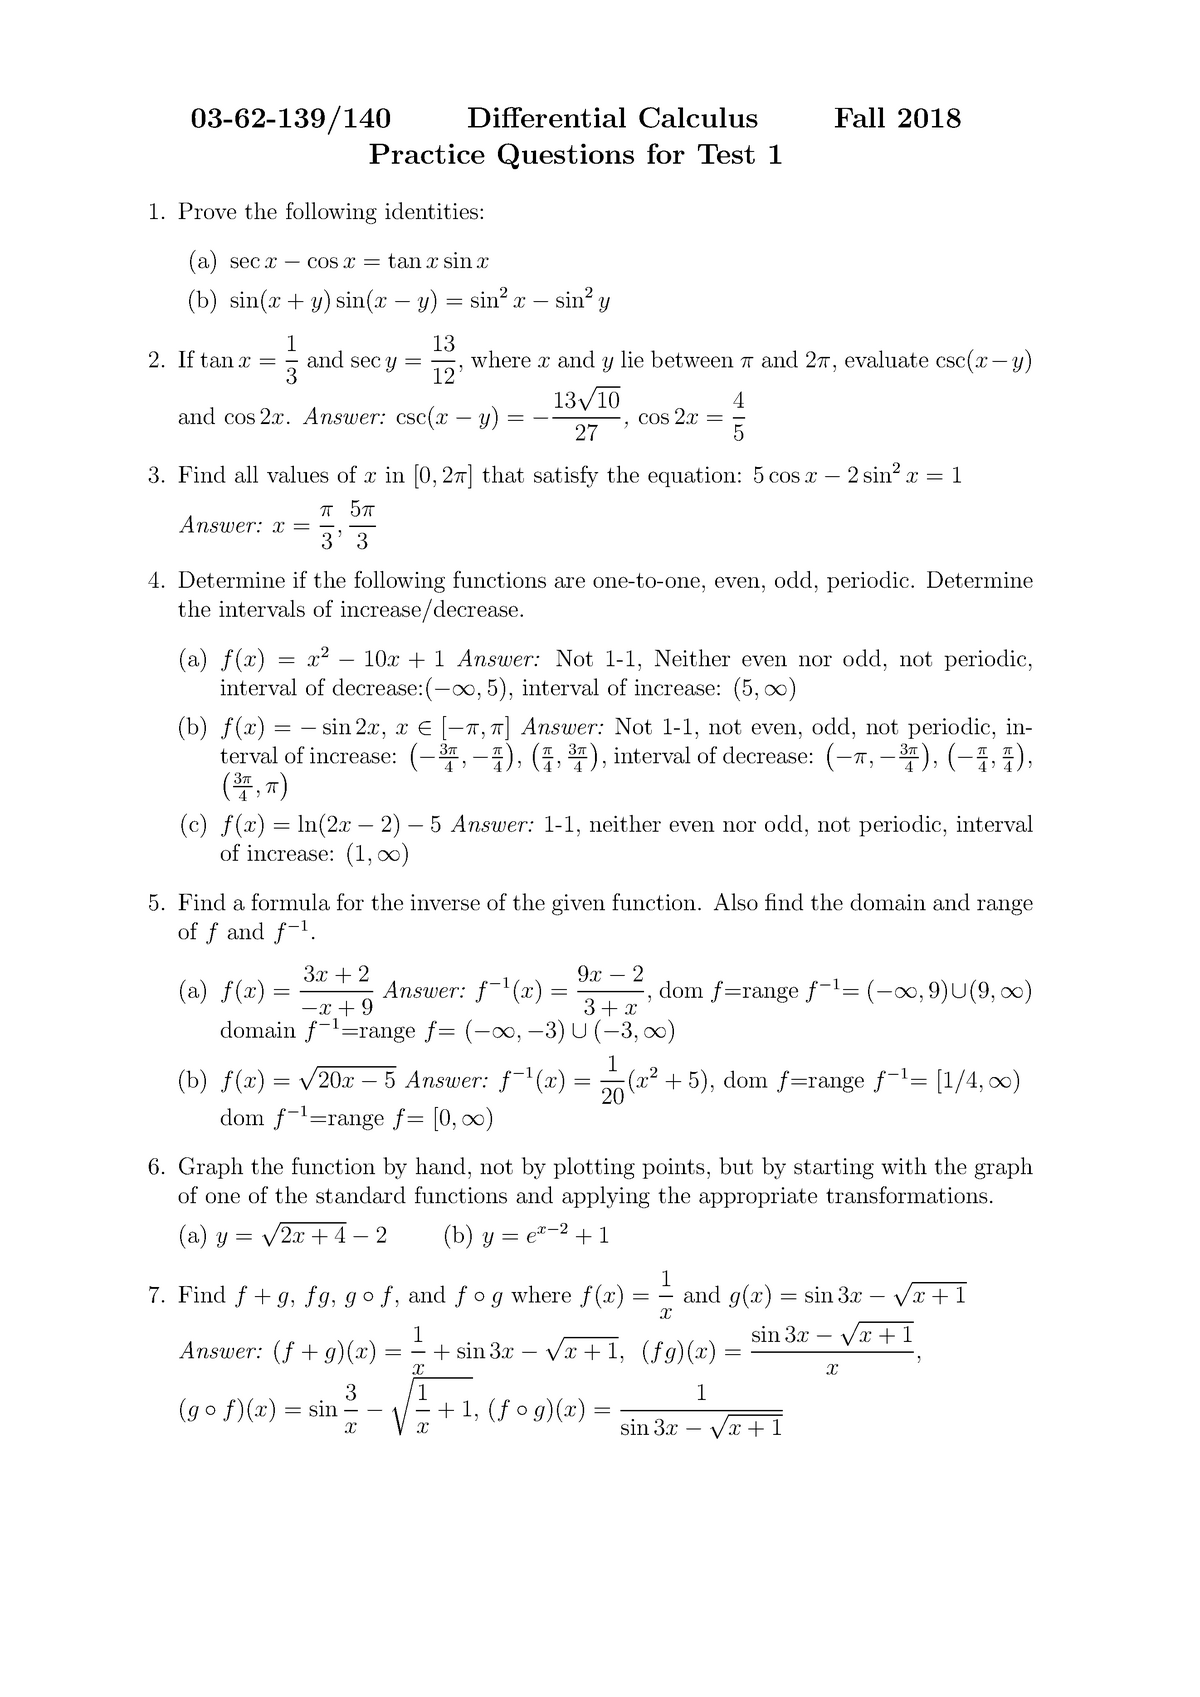 differential calculus quiz